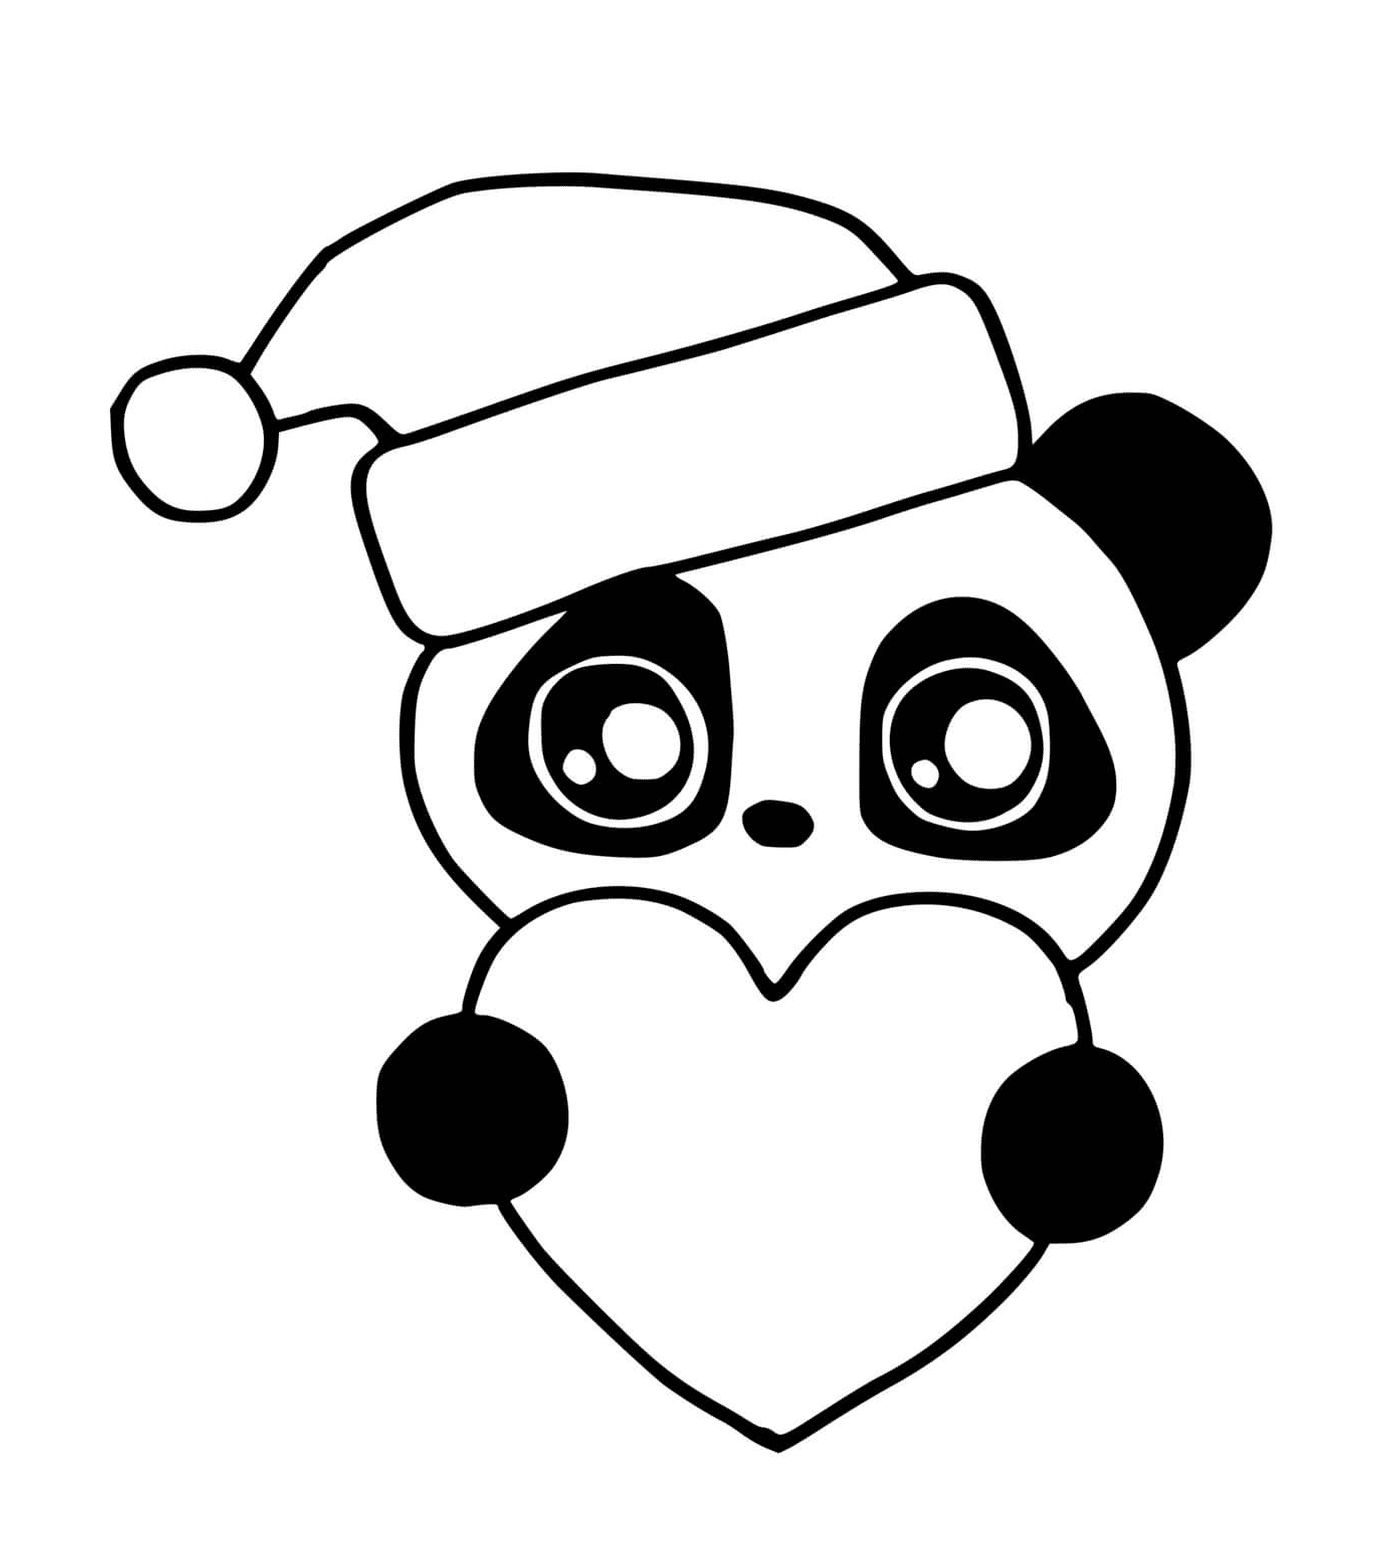  Panda fiesta de Navidad 